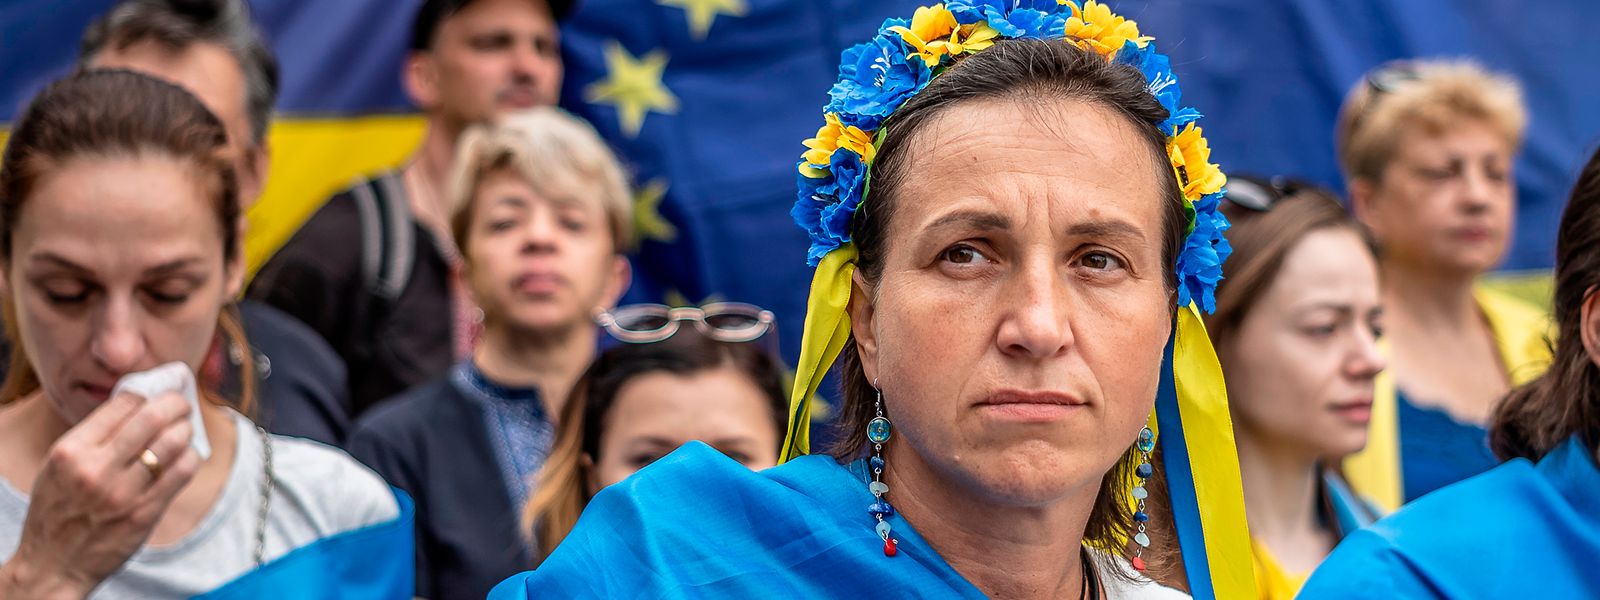 Ukrainer halten eine Kundgebung vor dem Sitz des Europäischen Rates ab. Die Demonstranten fordern den EU-Beitritt der Ukraine. Doch so schnell geht das nicht.